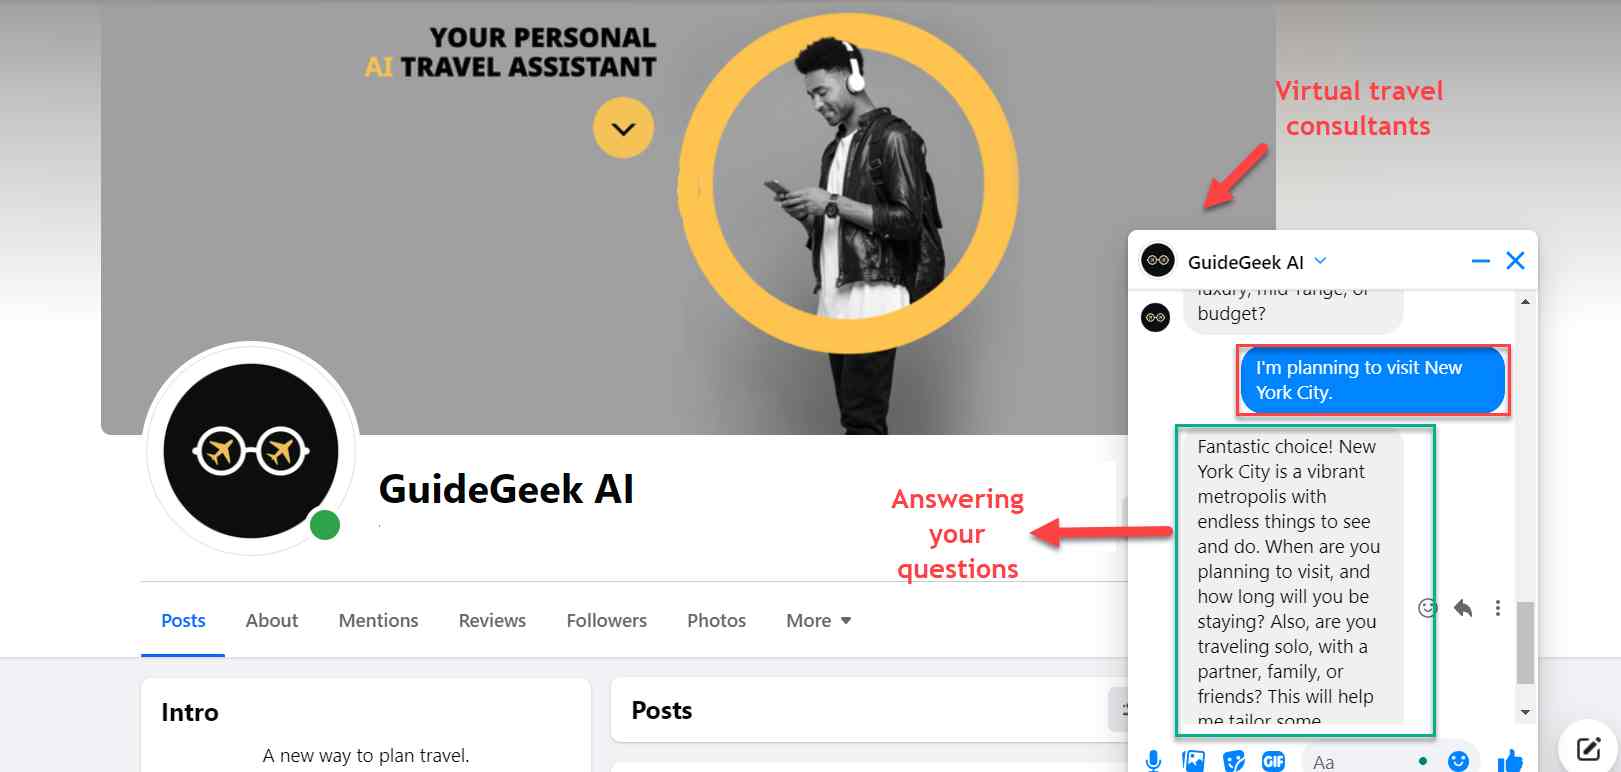  Guidegeek ist ein AI-Chatbot, der als virtueller Berater fungiert und in Echtzeit Fragen beantwortet sowie personalisierte Empfehlungen gibt. 